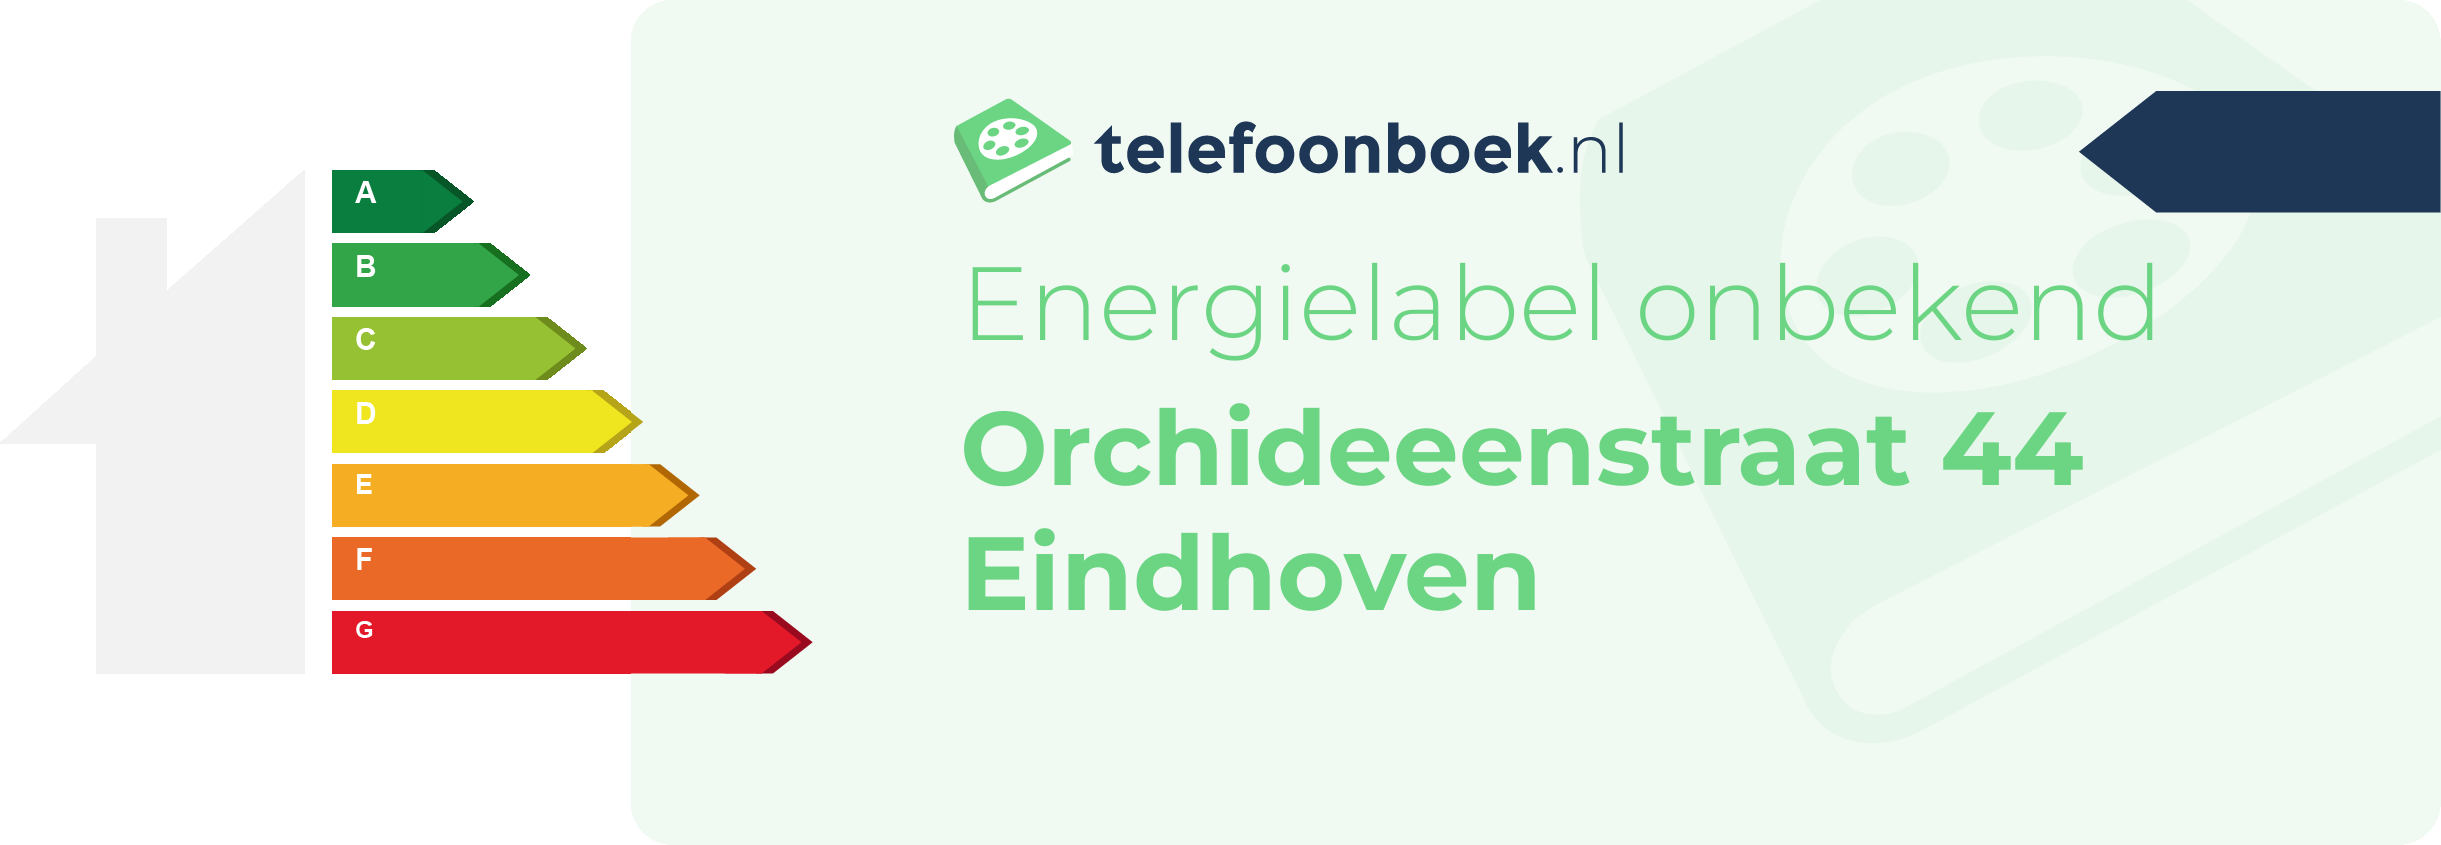 Energielabel Orchideeenstraat 44 Eindhoven